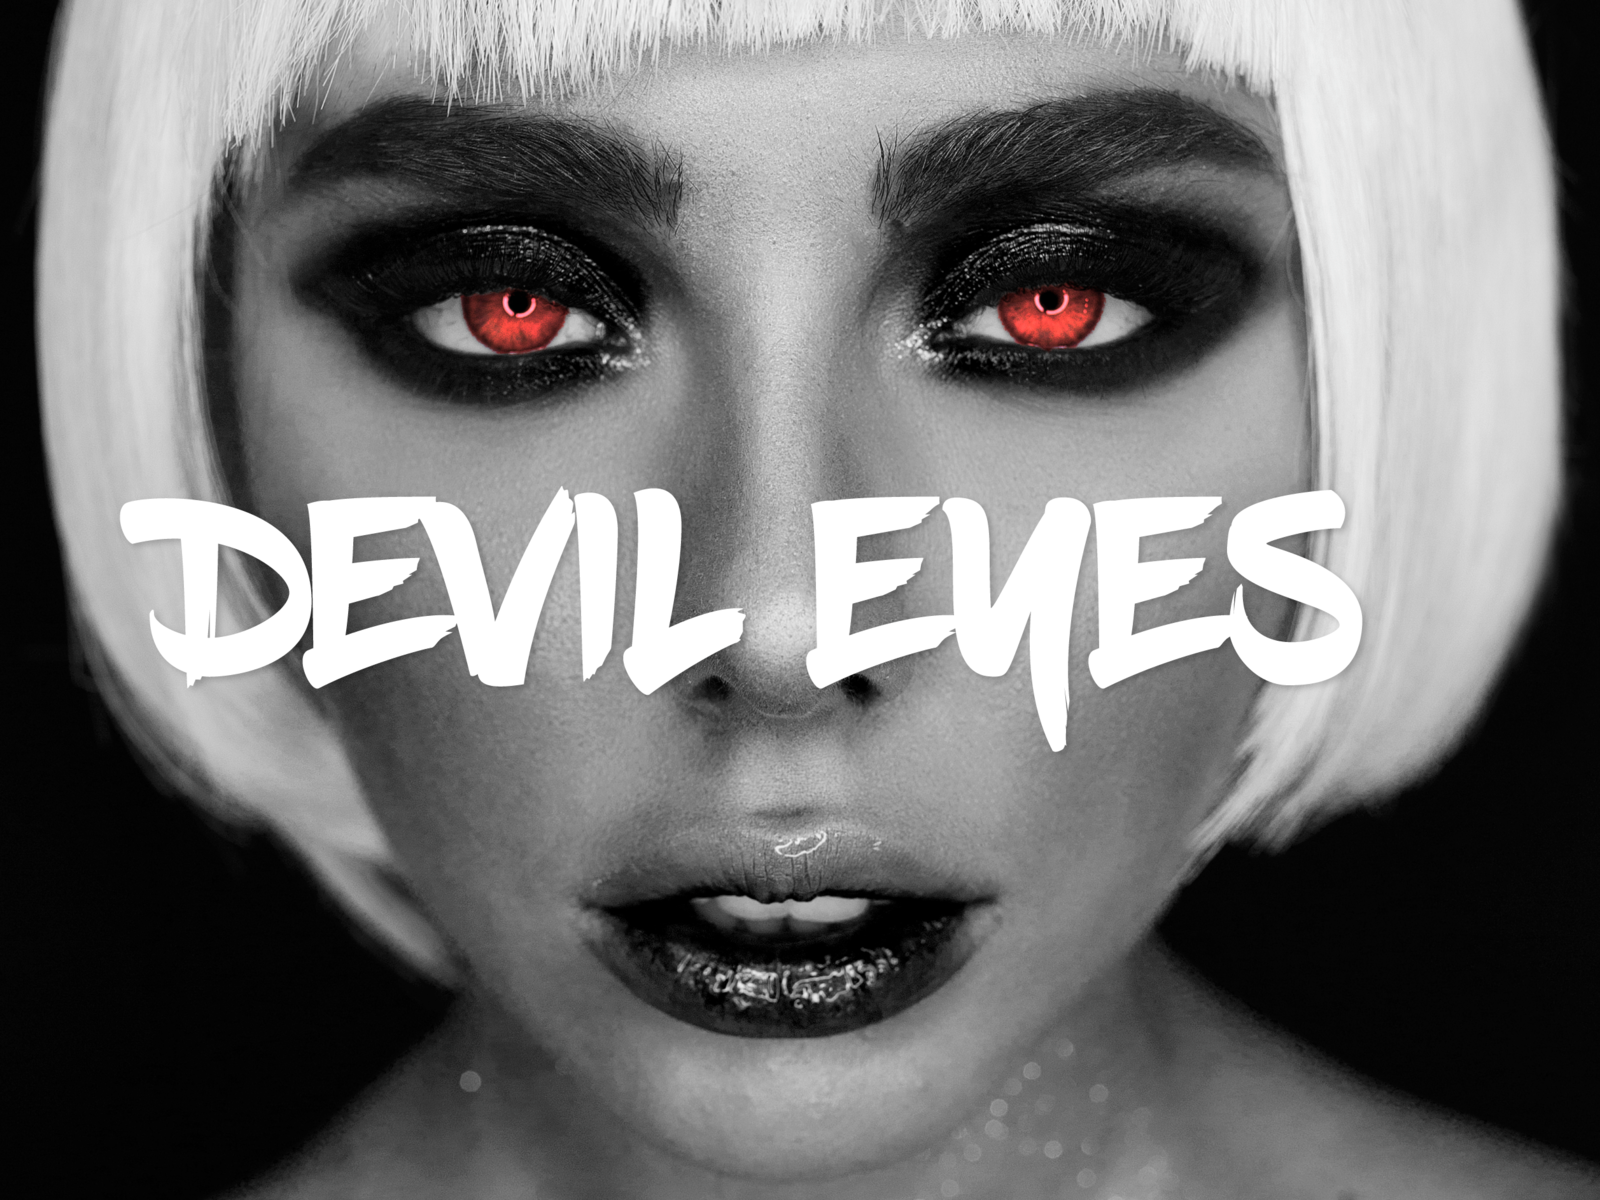 Devil eyes remix. Devil Eyes Hippie Sabotage. Providence Devil Eyes. Devil Eyes обложка. Devil Eyes zodivk.